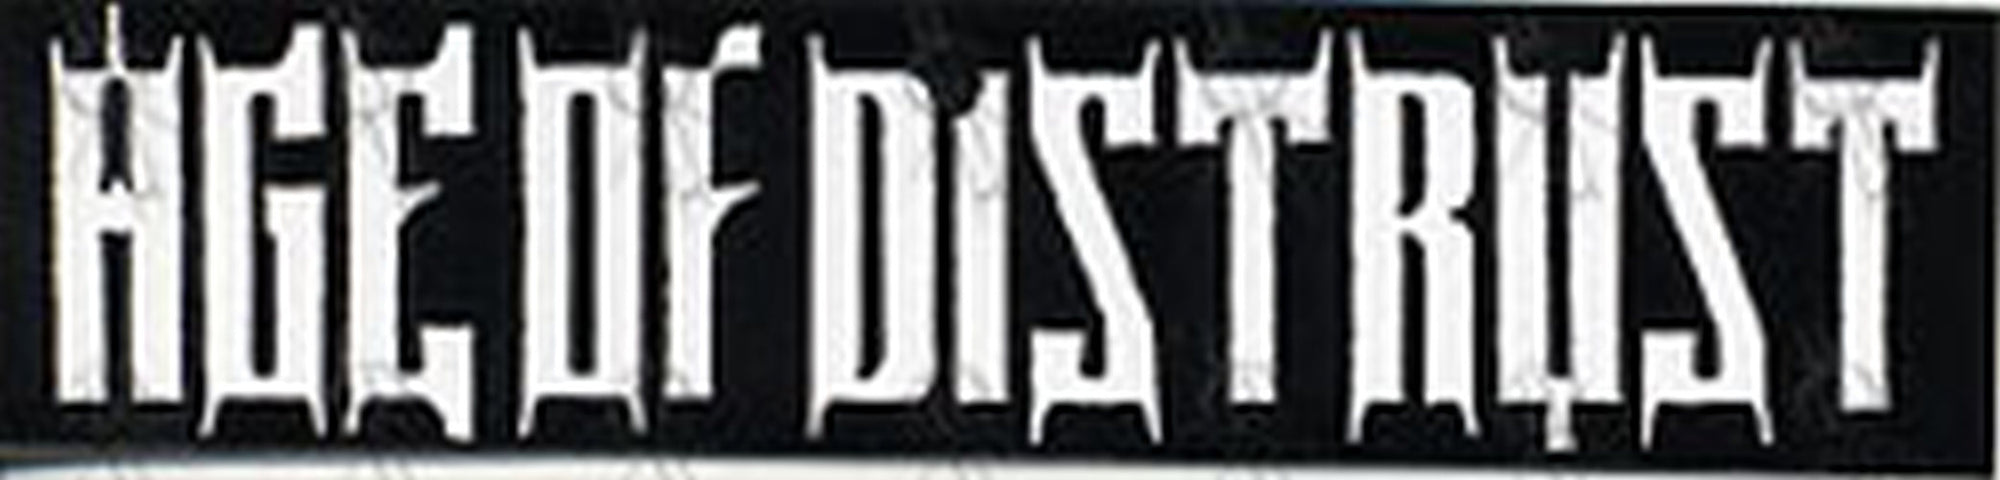 AGE OF DISTRUST - 'Age Of Distrust' Sticker - 1